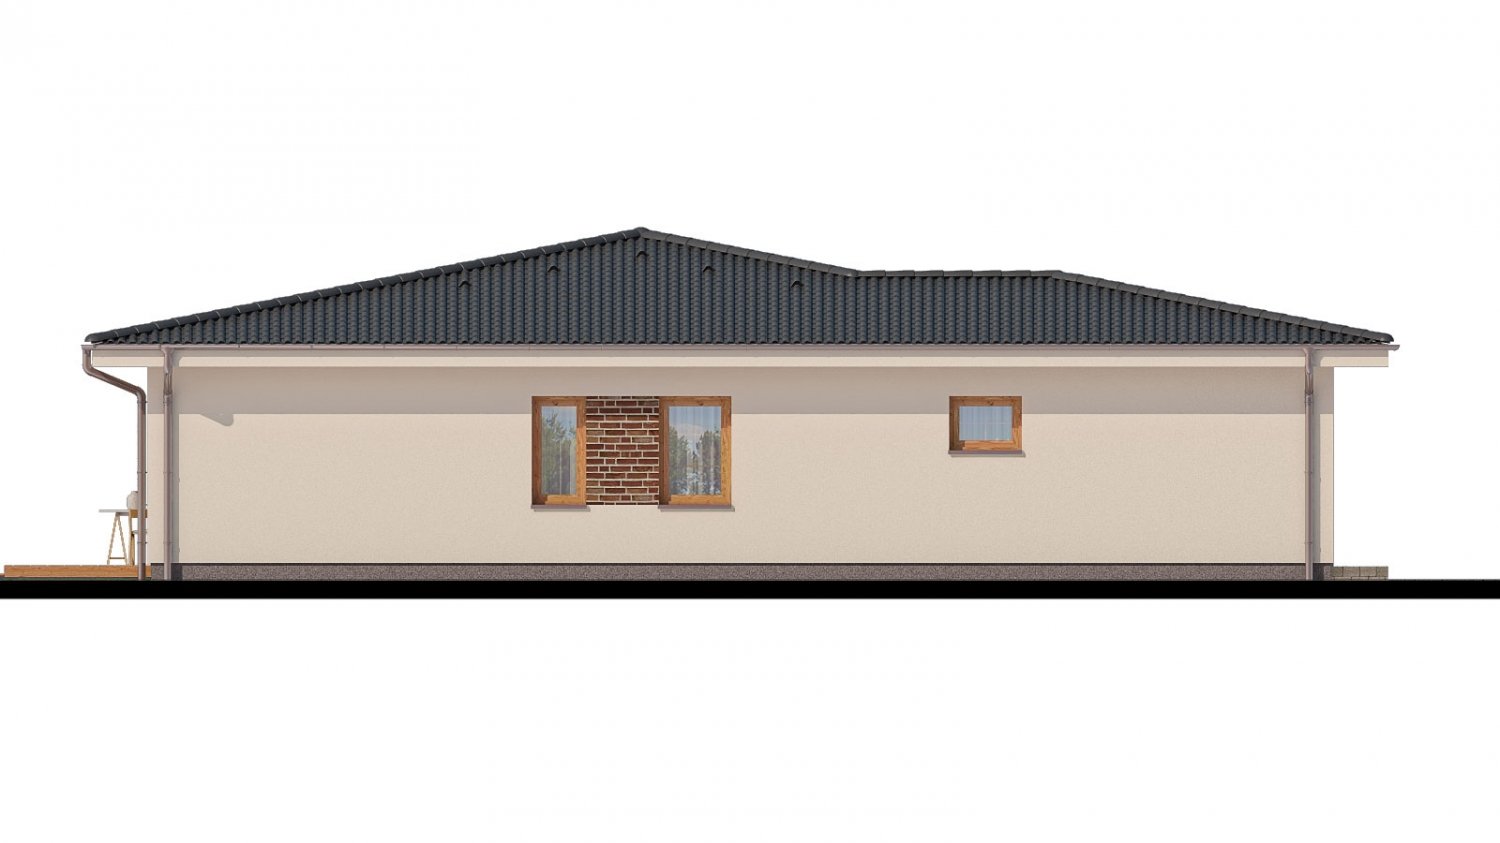 Pohľad 4. - Projekt rodinného domu s garáží a prostornou obývacím pokojem.